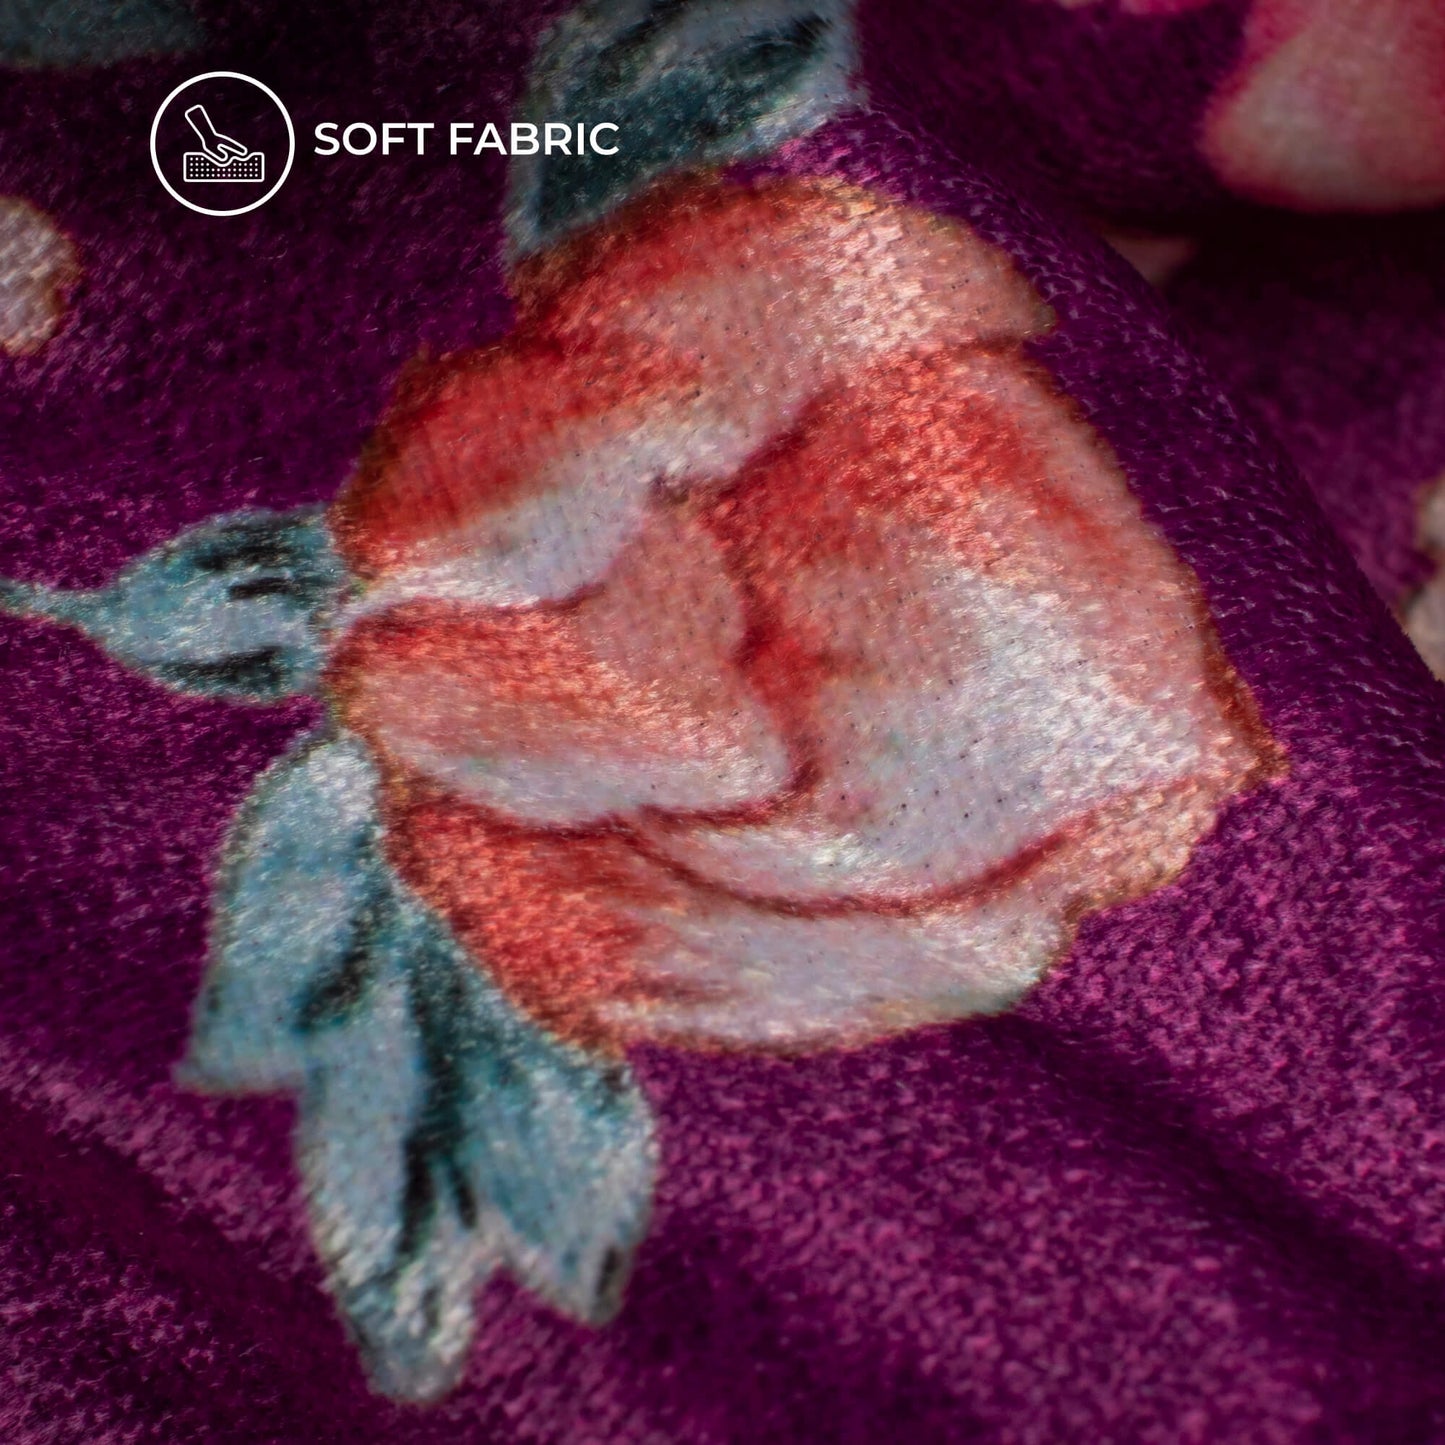 Attractive Floral Digital Print Premium Velvet Fabric